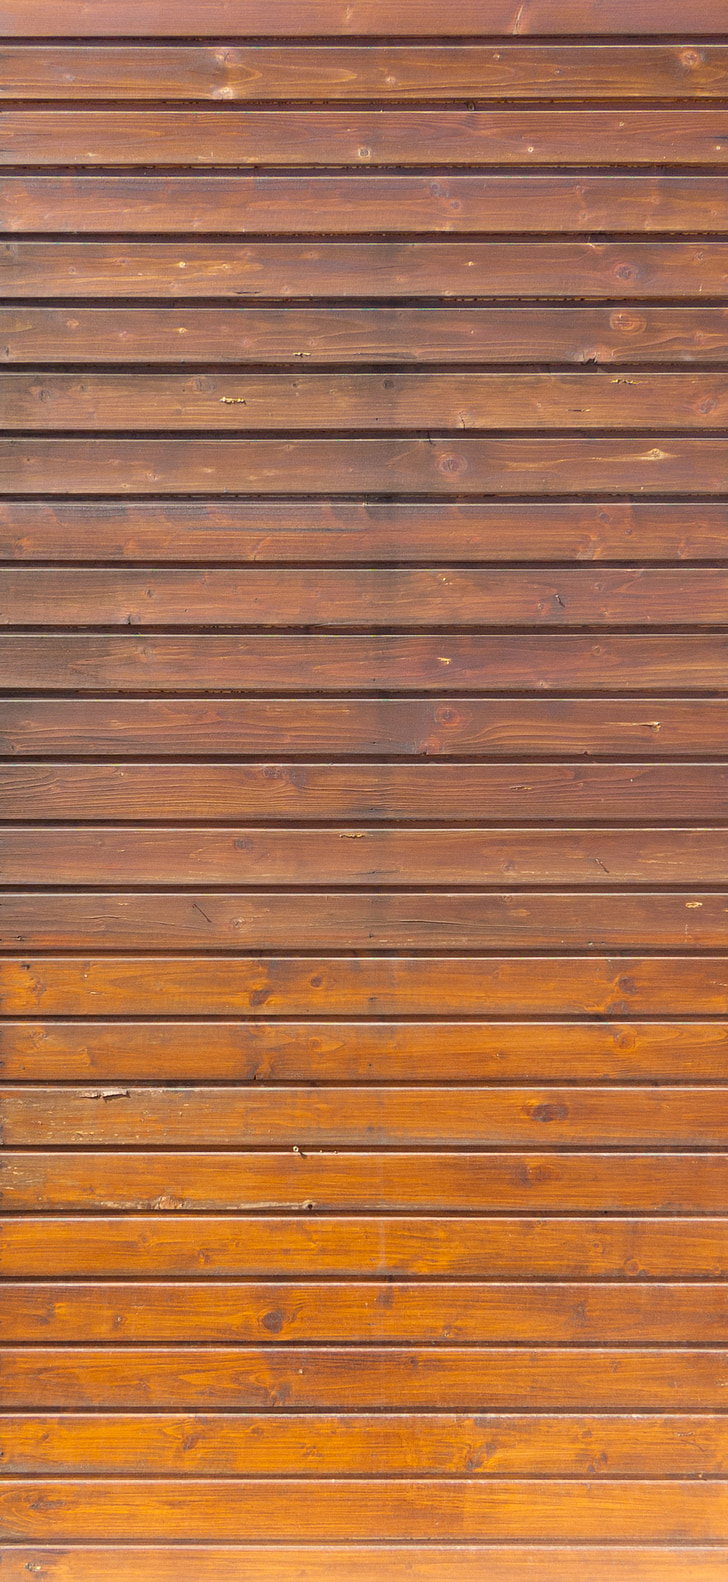 madeira, placa, parede, de madeira, textura, natural, madeira - material